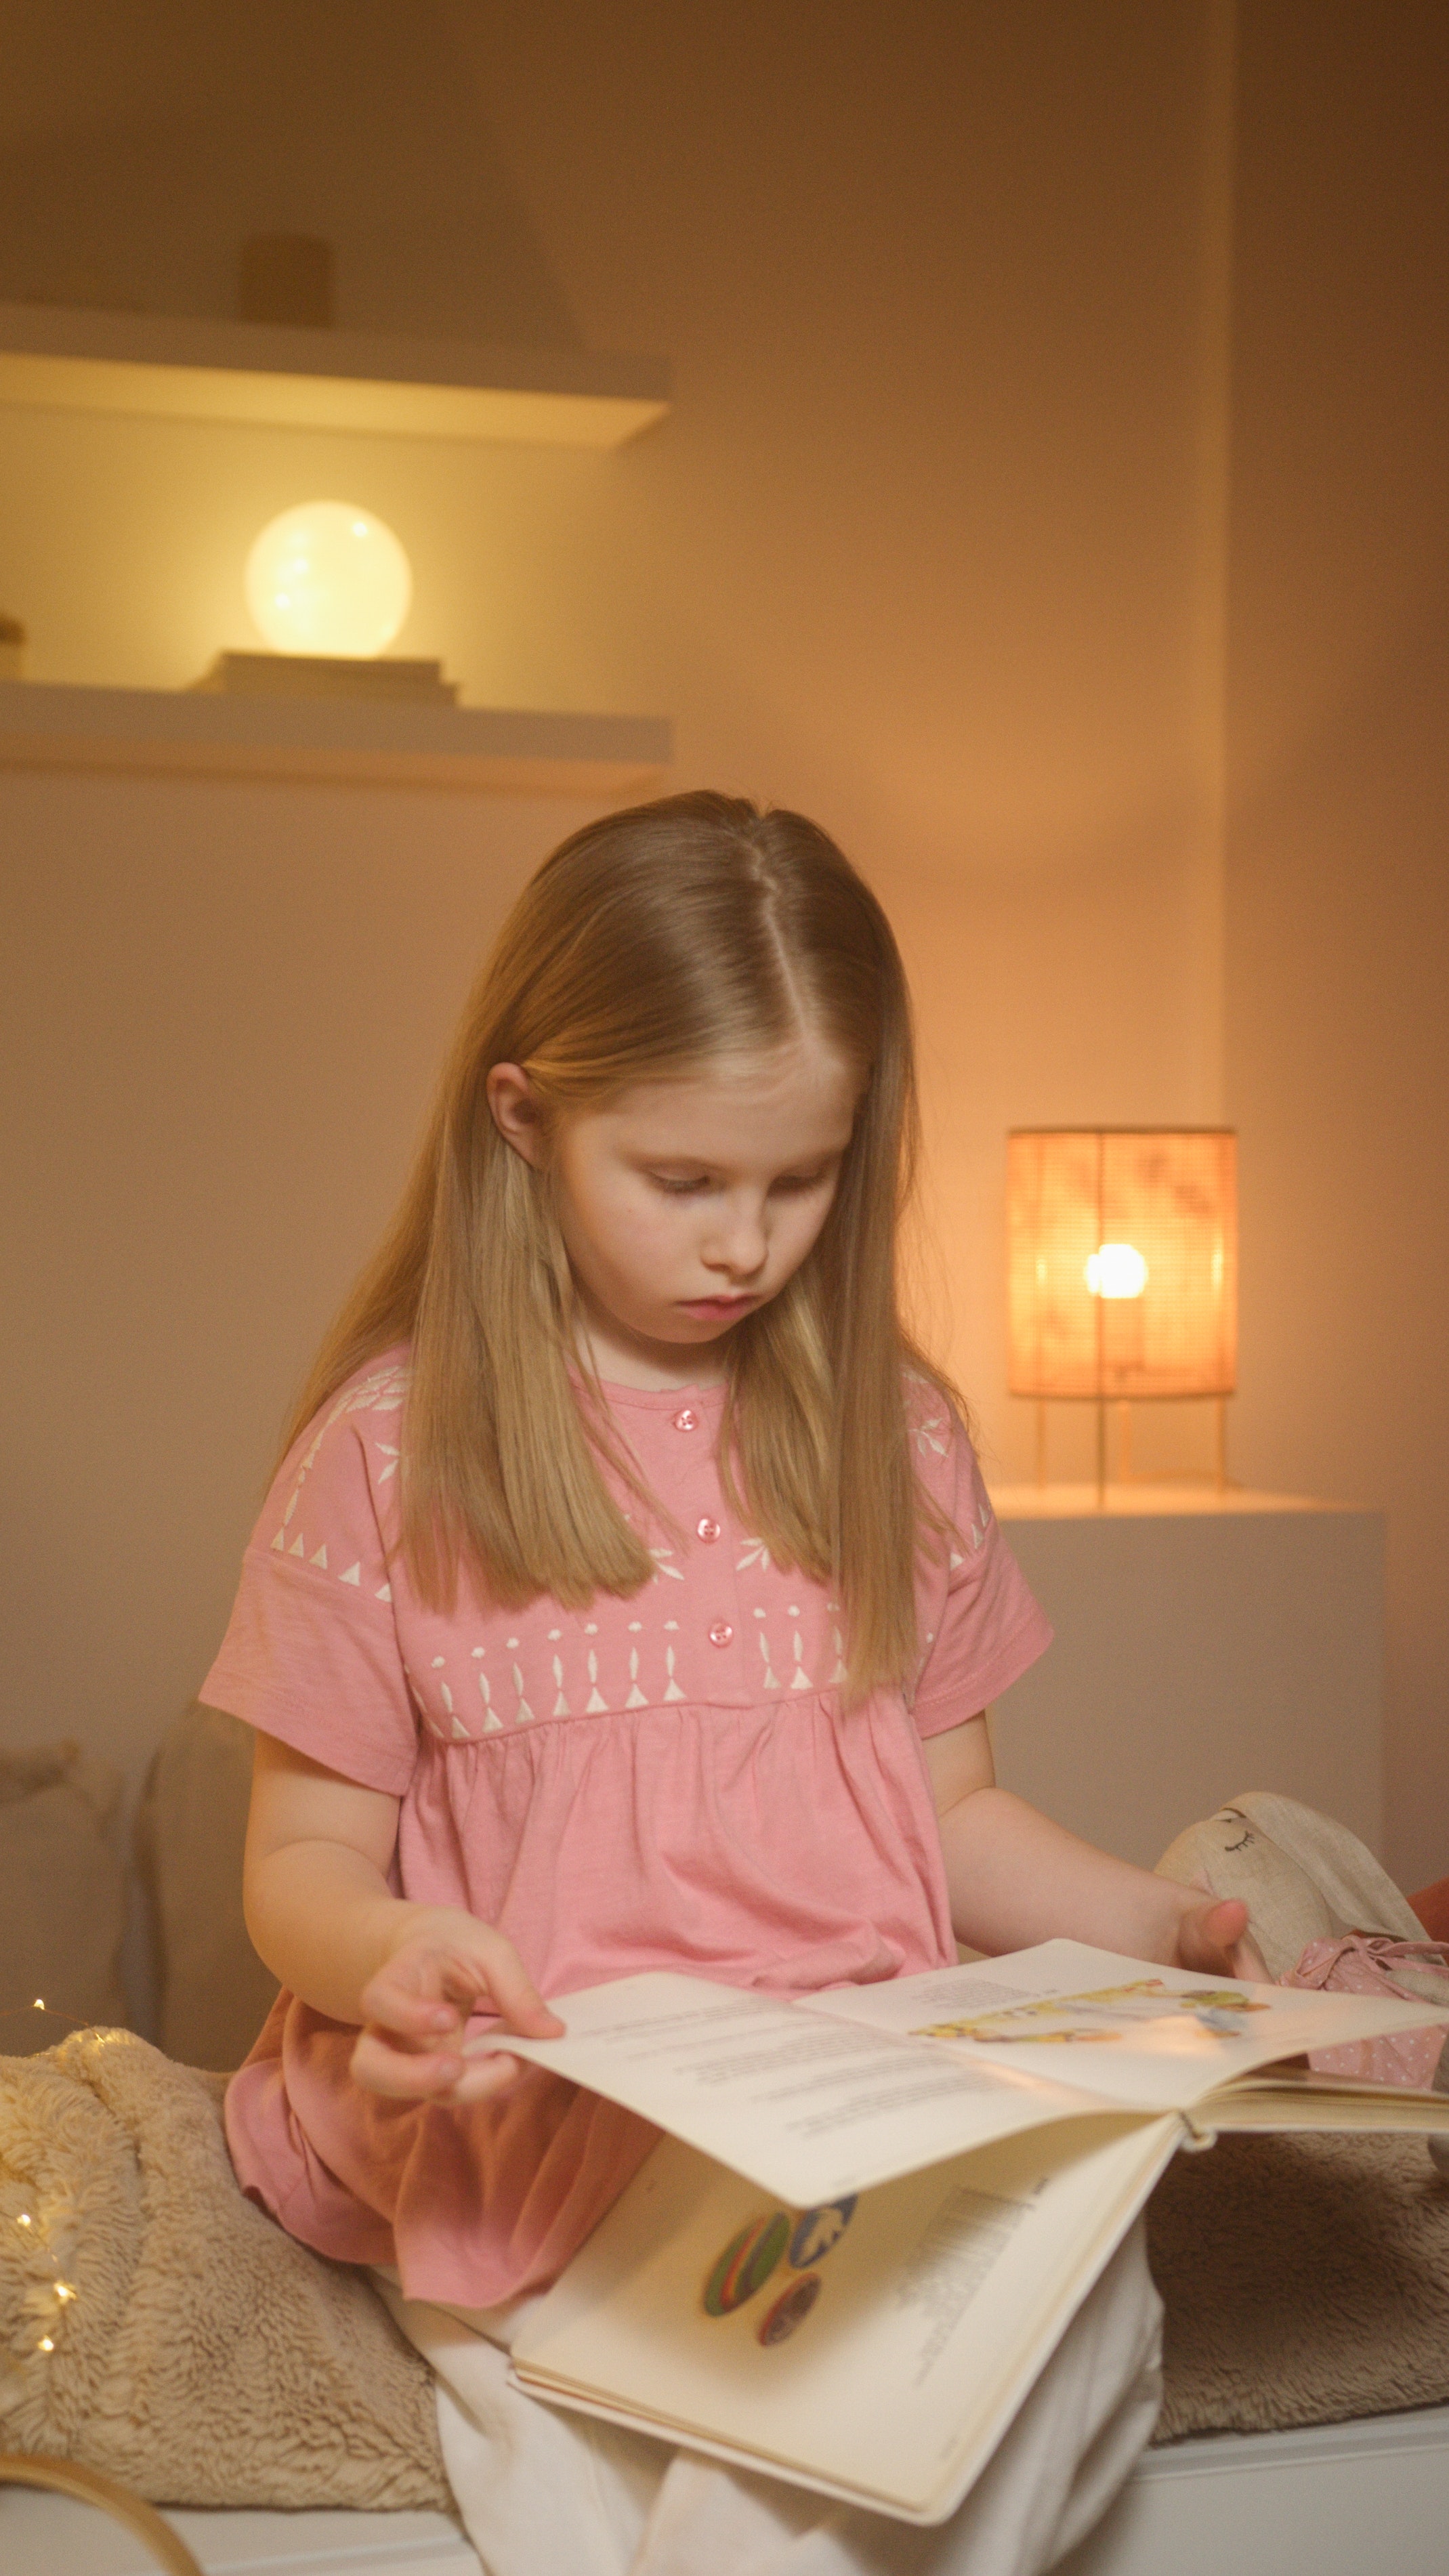 La imagen muestra una niña leyendo un cuento.